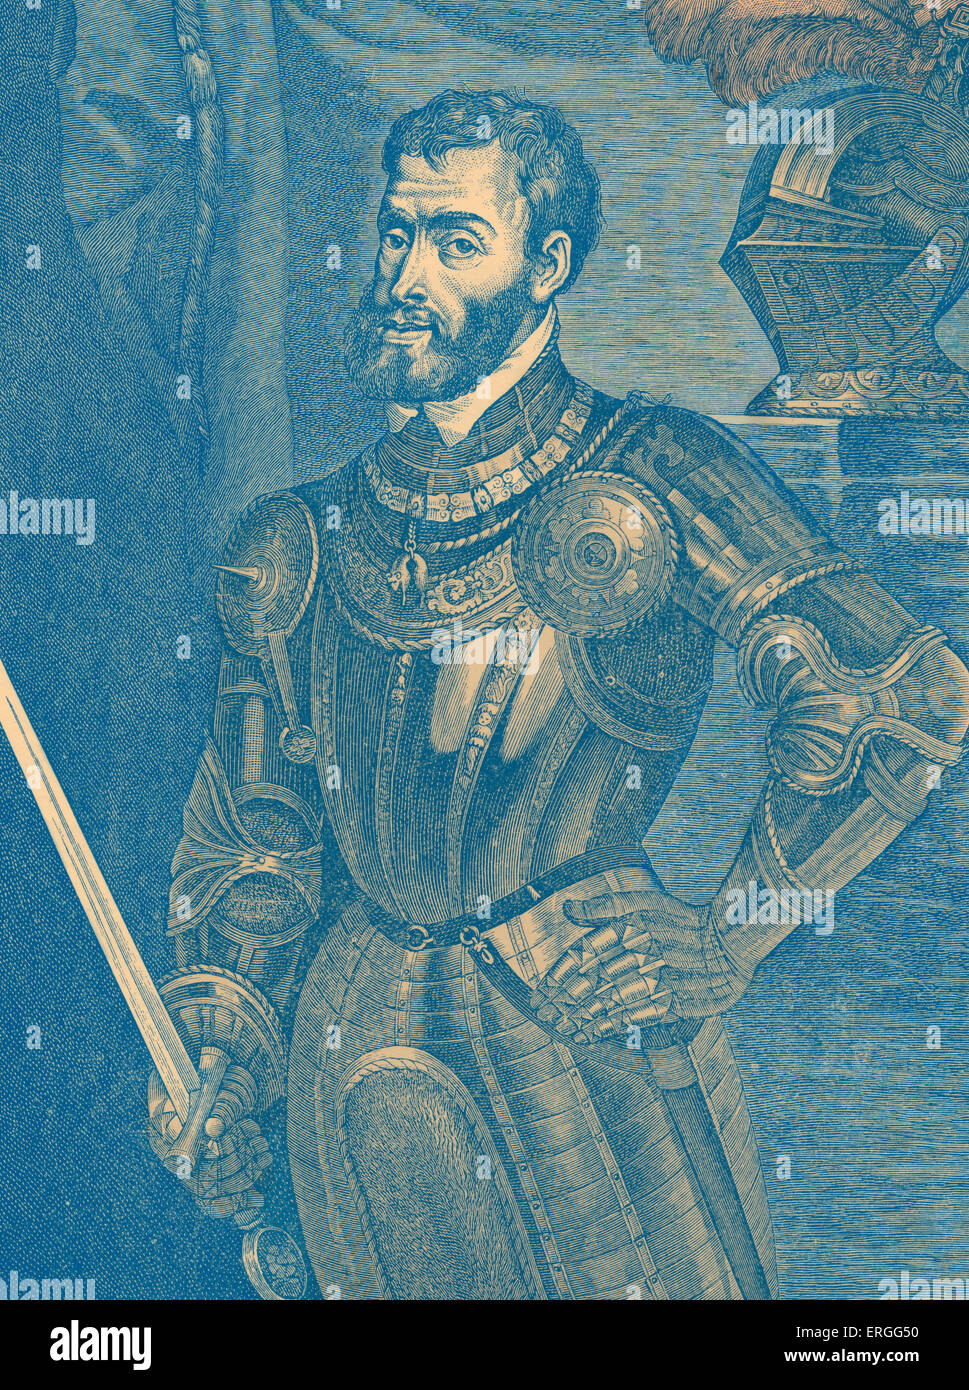 Charles V - portrait de saint empereur romain 24 février 1500 - 21 septembre 1558. Connu sous le nom de Carlos I de España y V de Alemania Banque D'Images